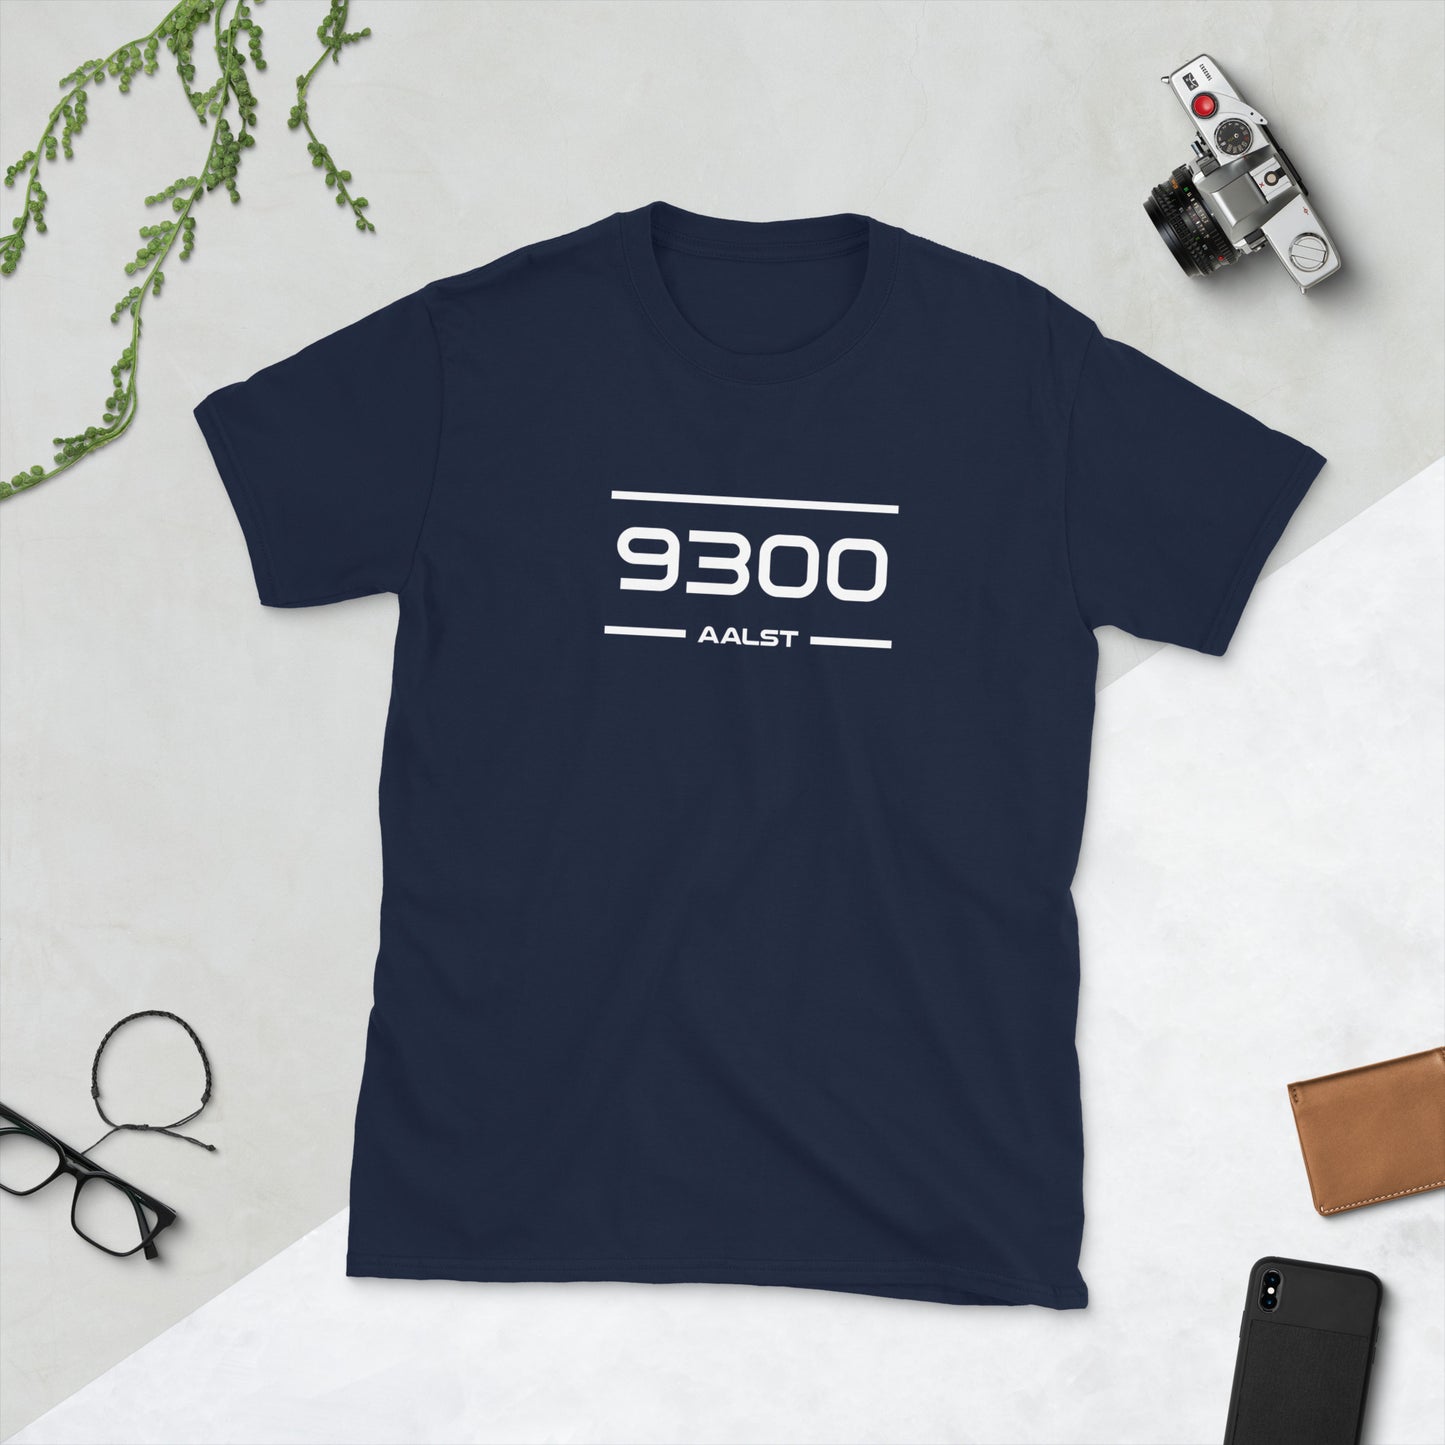 T-Shirt - 9300 - Aalst